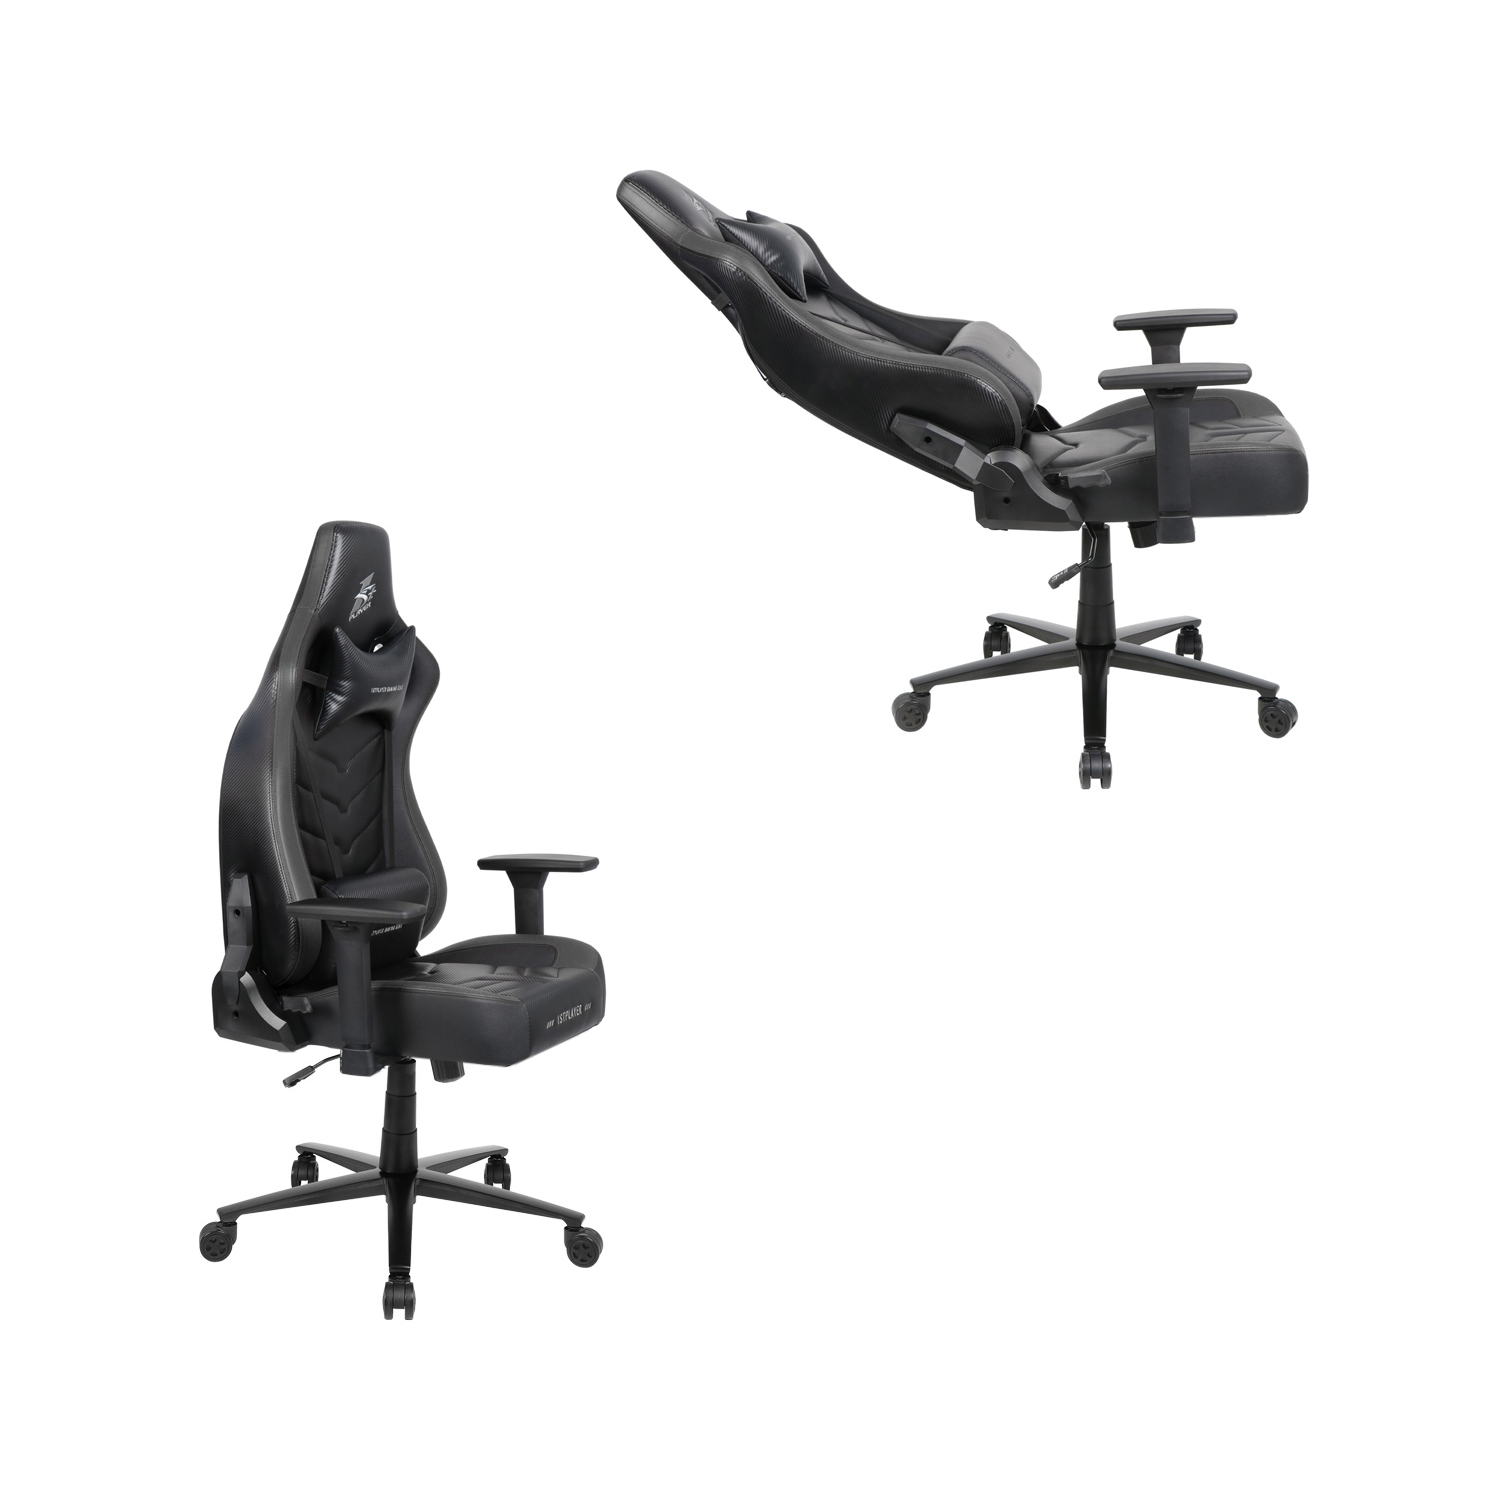 Игровое компьютерное кресло 1stPlayer DK1 Pro, Black  - купить по цене 108 710 тг. в интернет-магазине Forcecom.kz